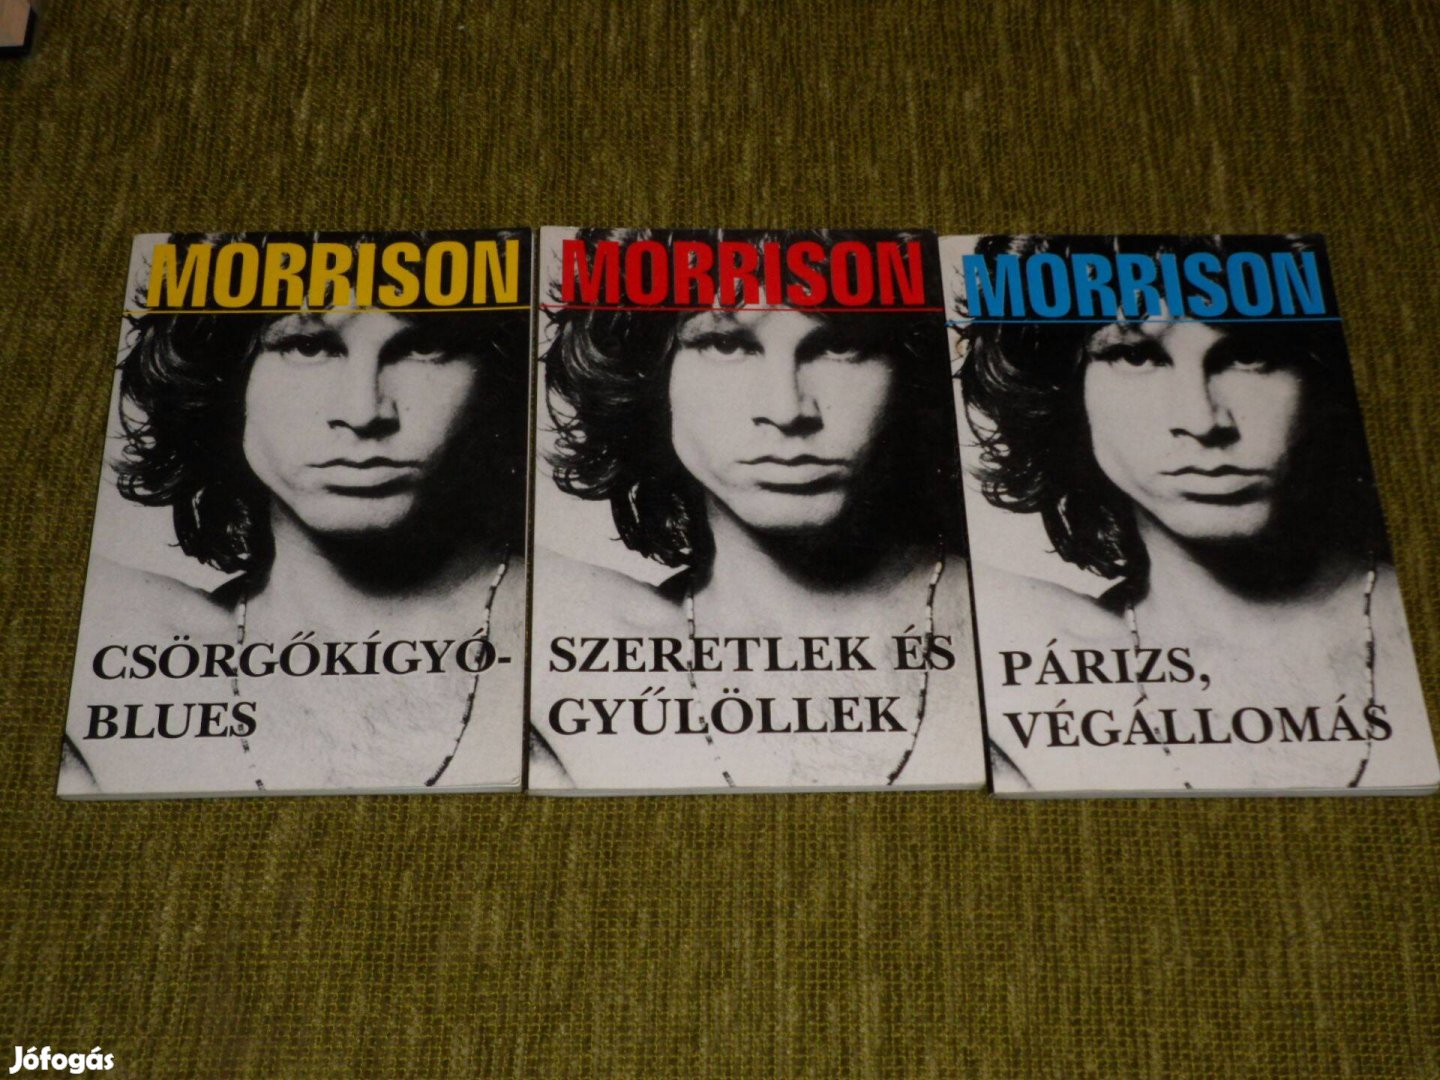 Jim Morrison: Csörgőkígyó-blues + Szeretlek és gyűlöllek + Párizs végá